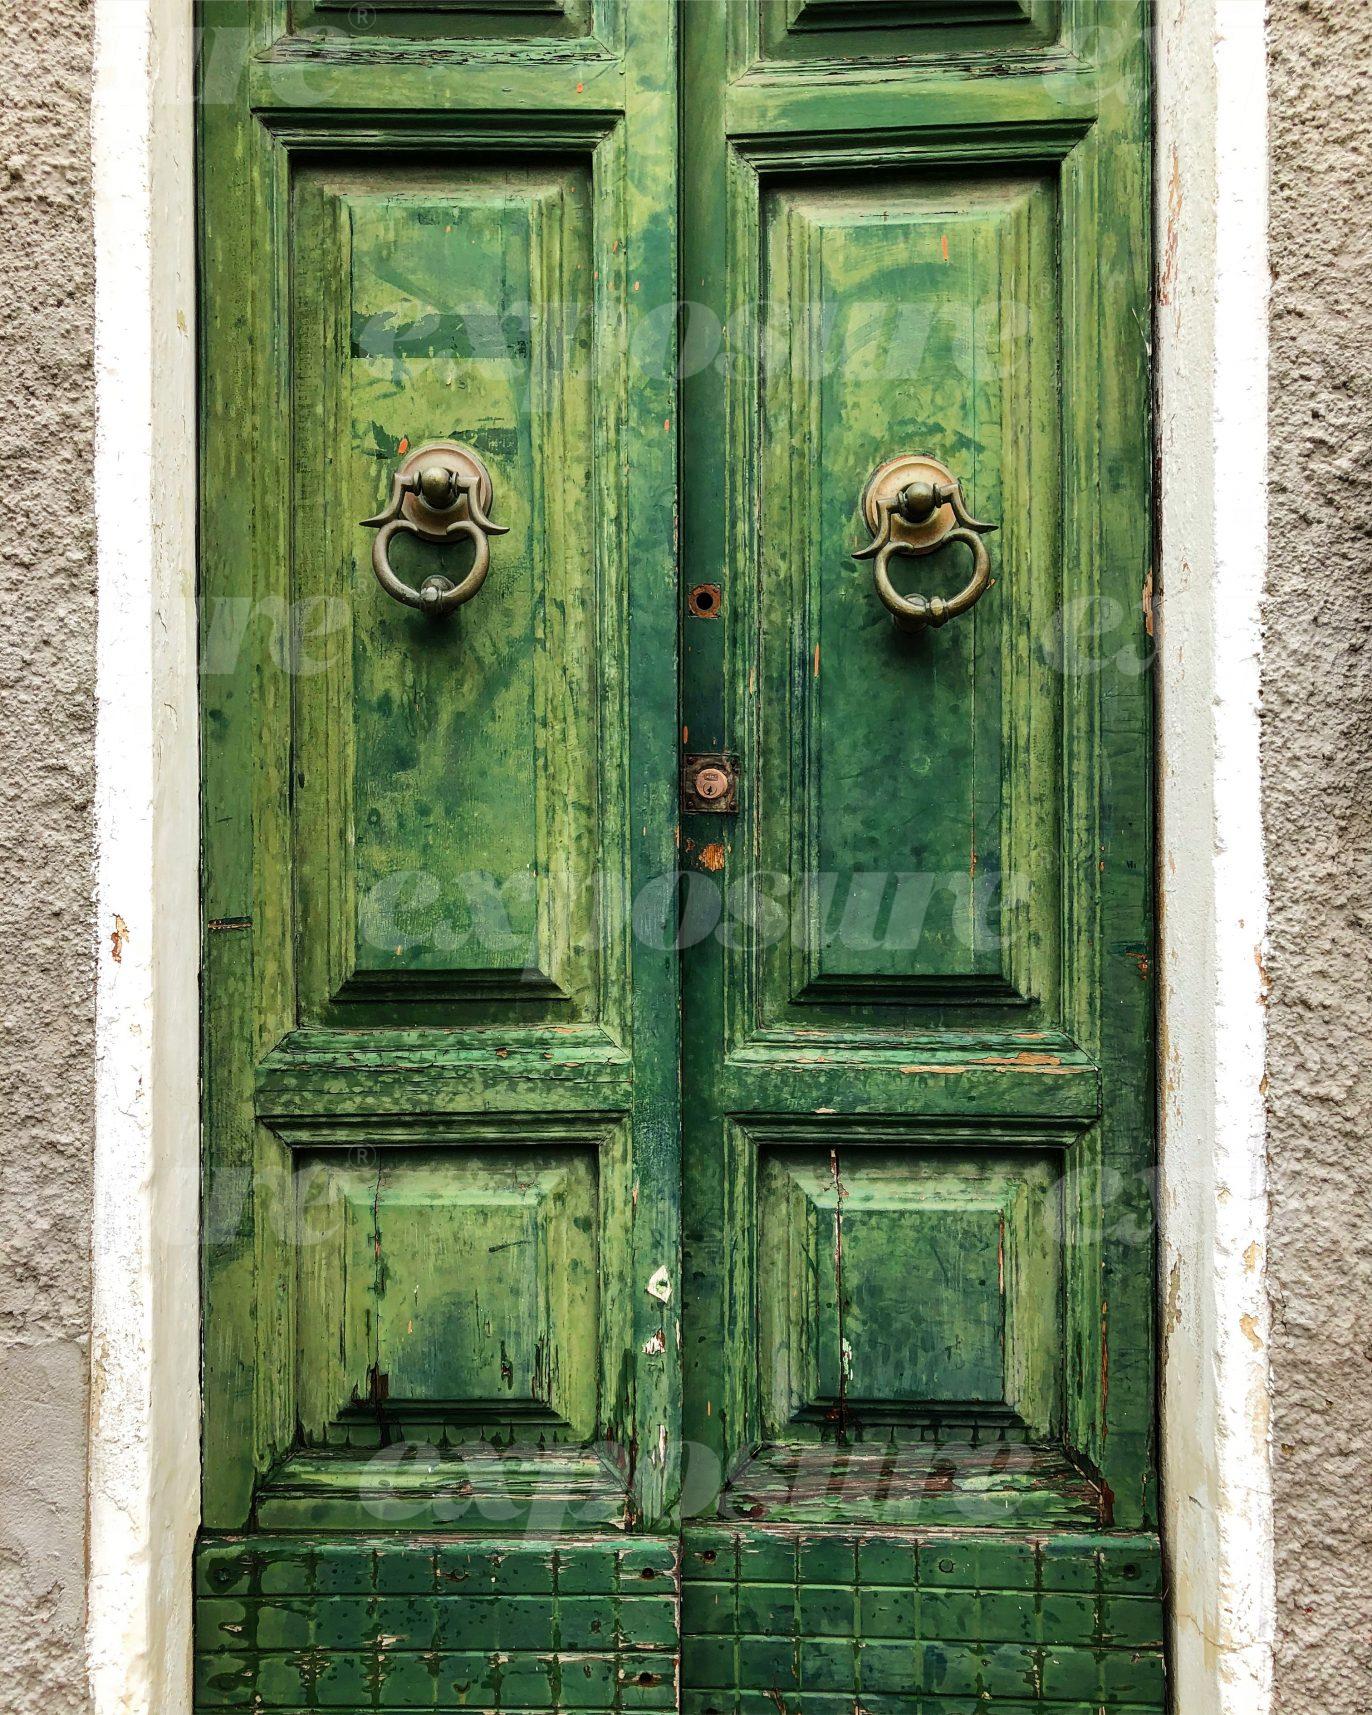 Sardinian doors